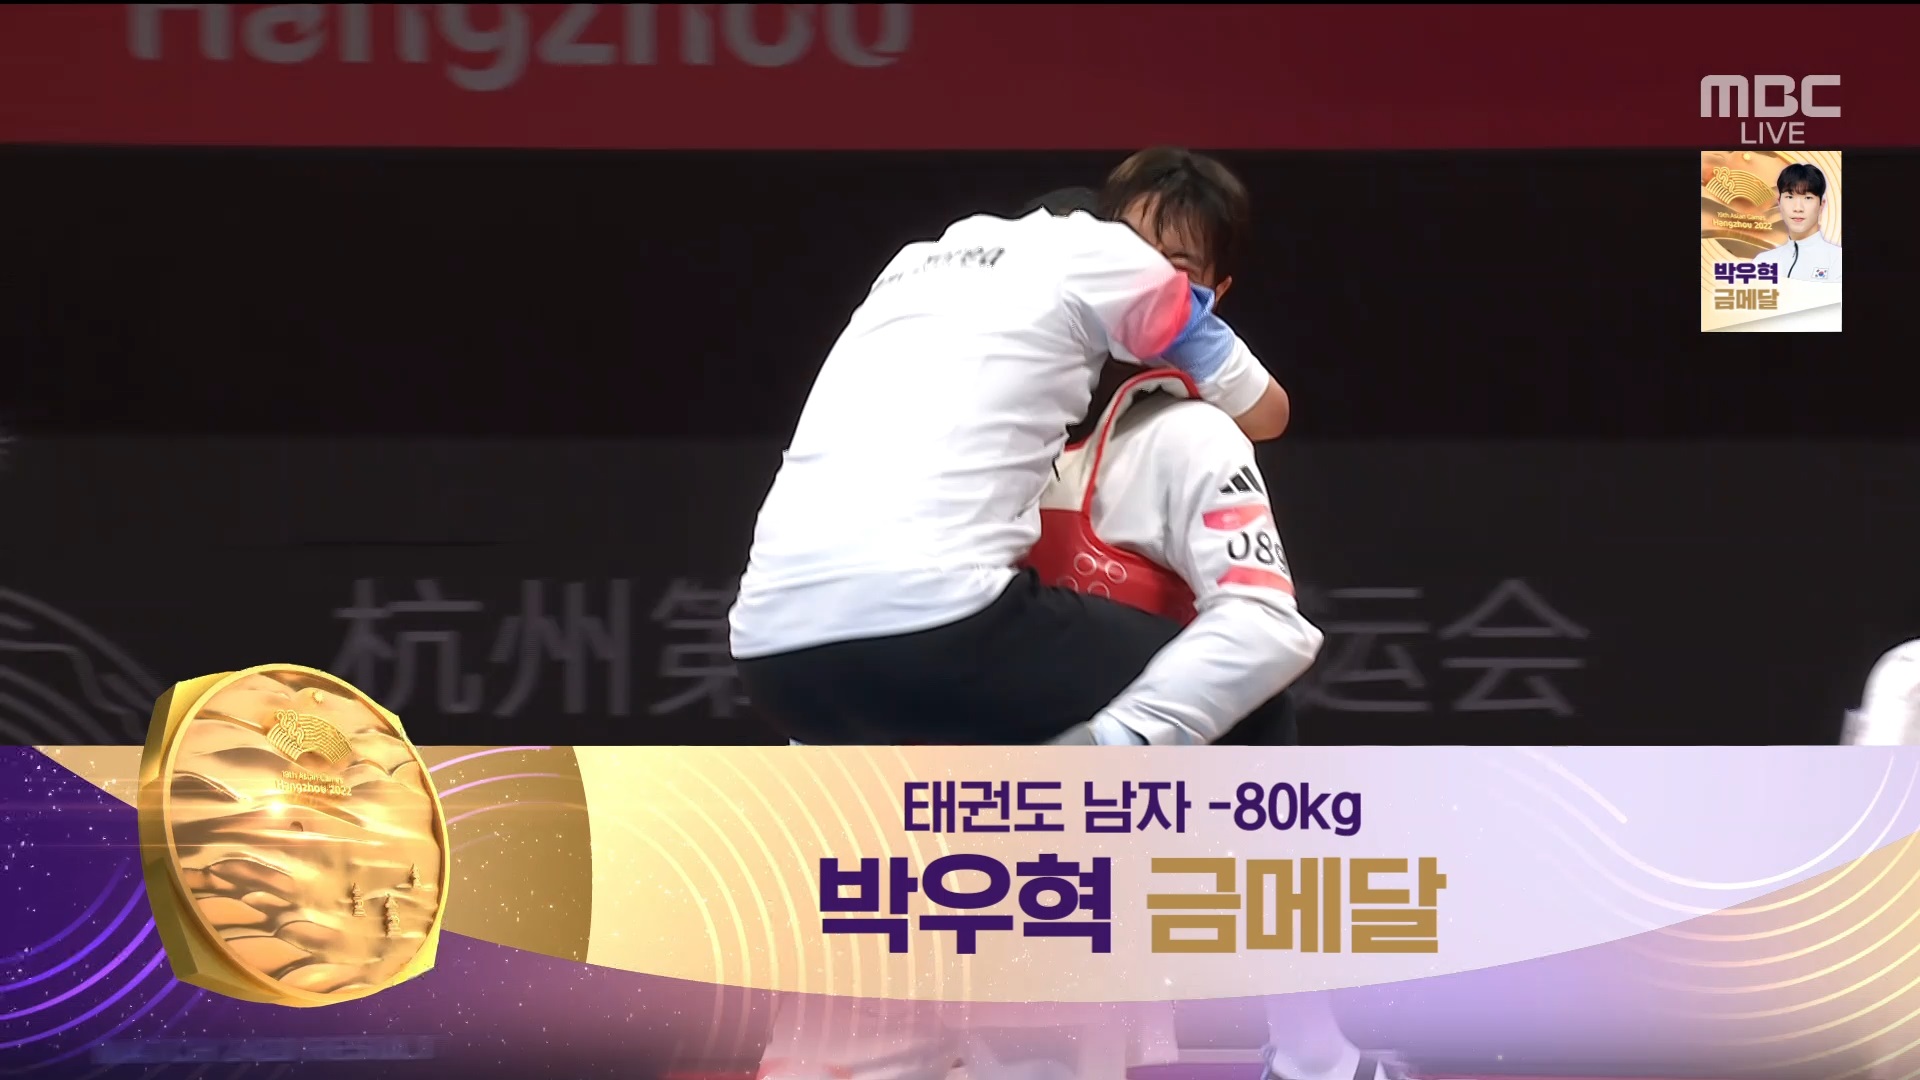 태권도 | 남자 -80kg 결승... '짱구 세레머니', 퍼포먼스 장인 박우혁 금메달 획득! 이미지